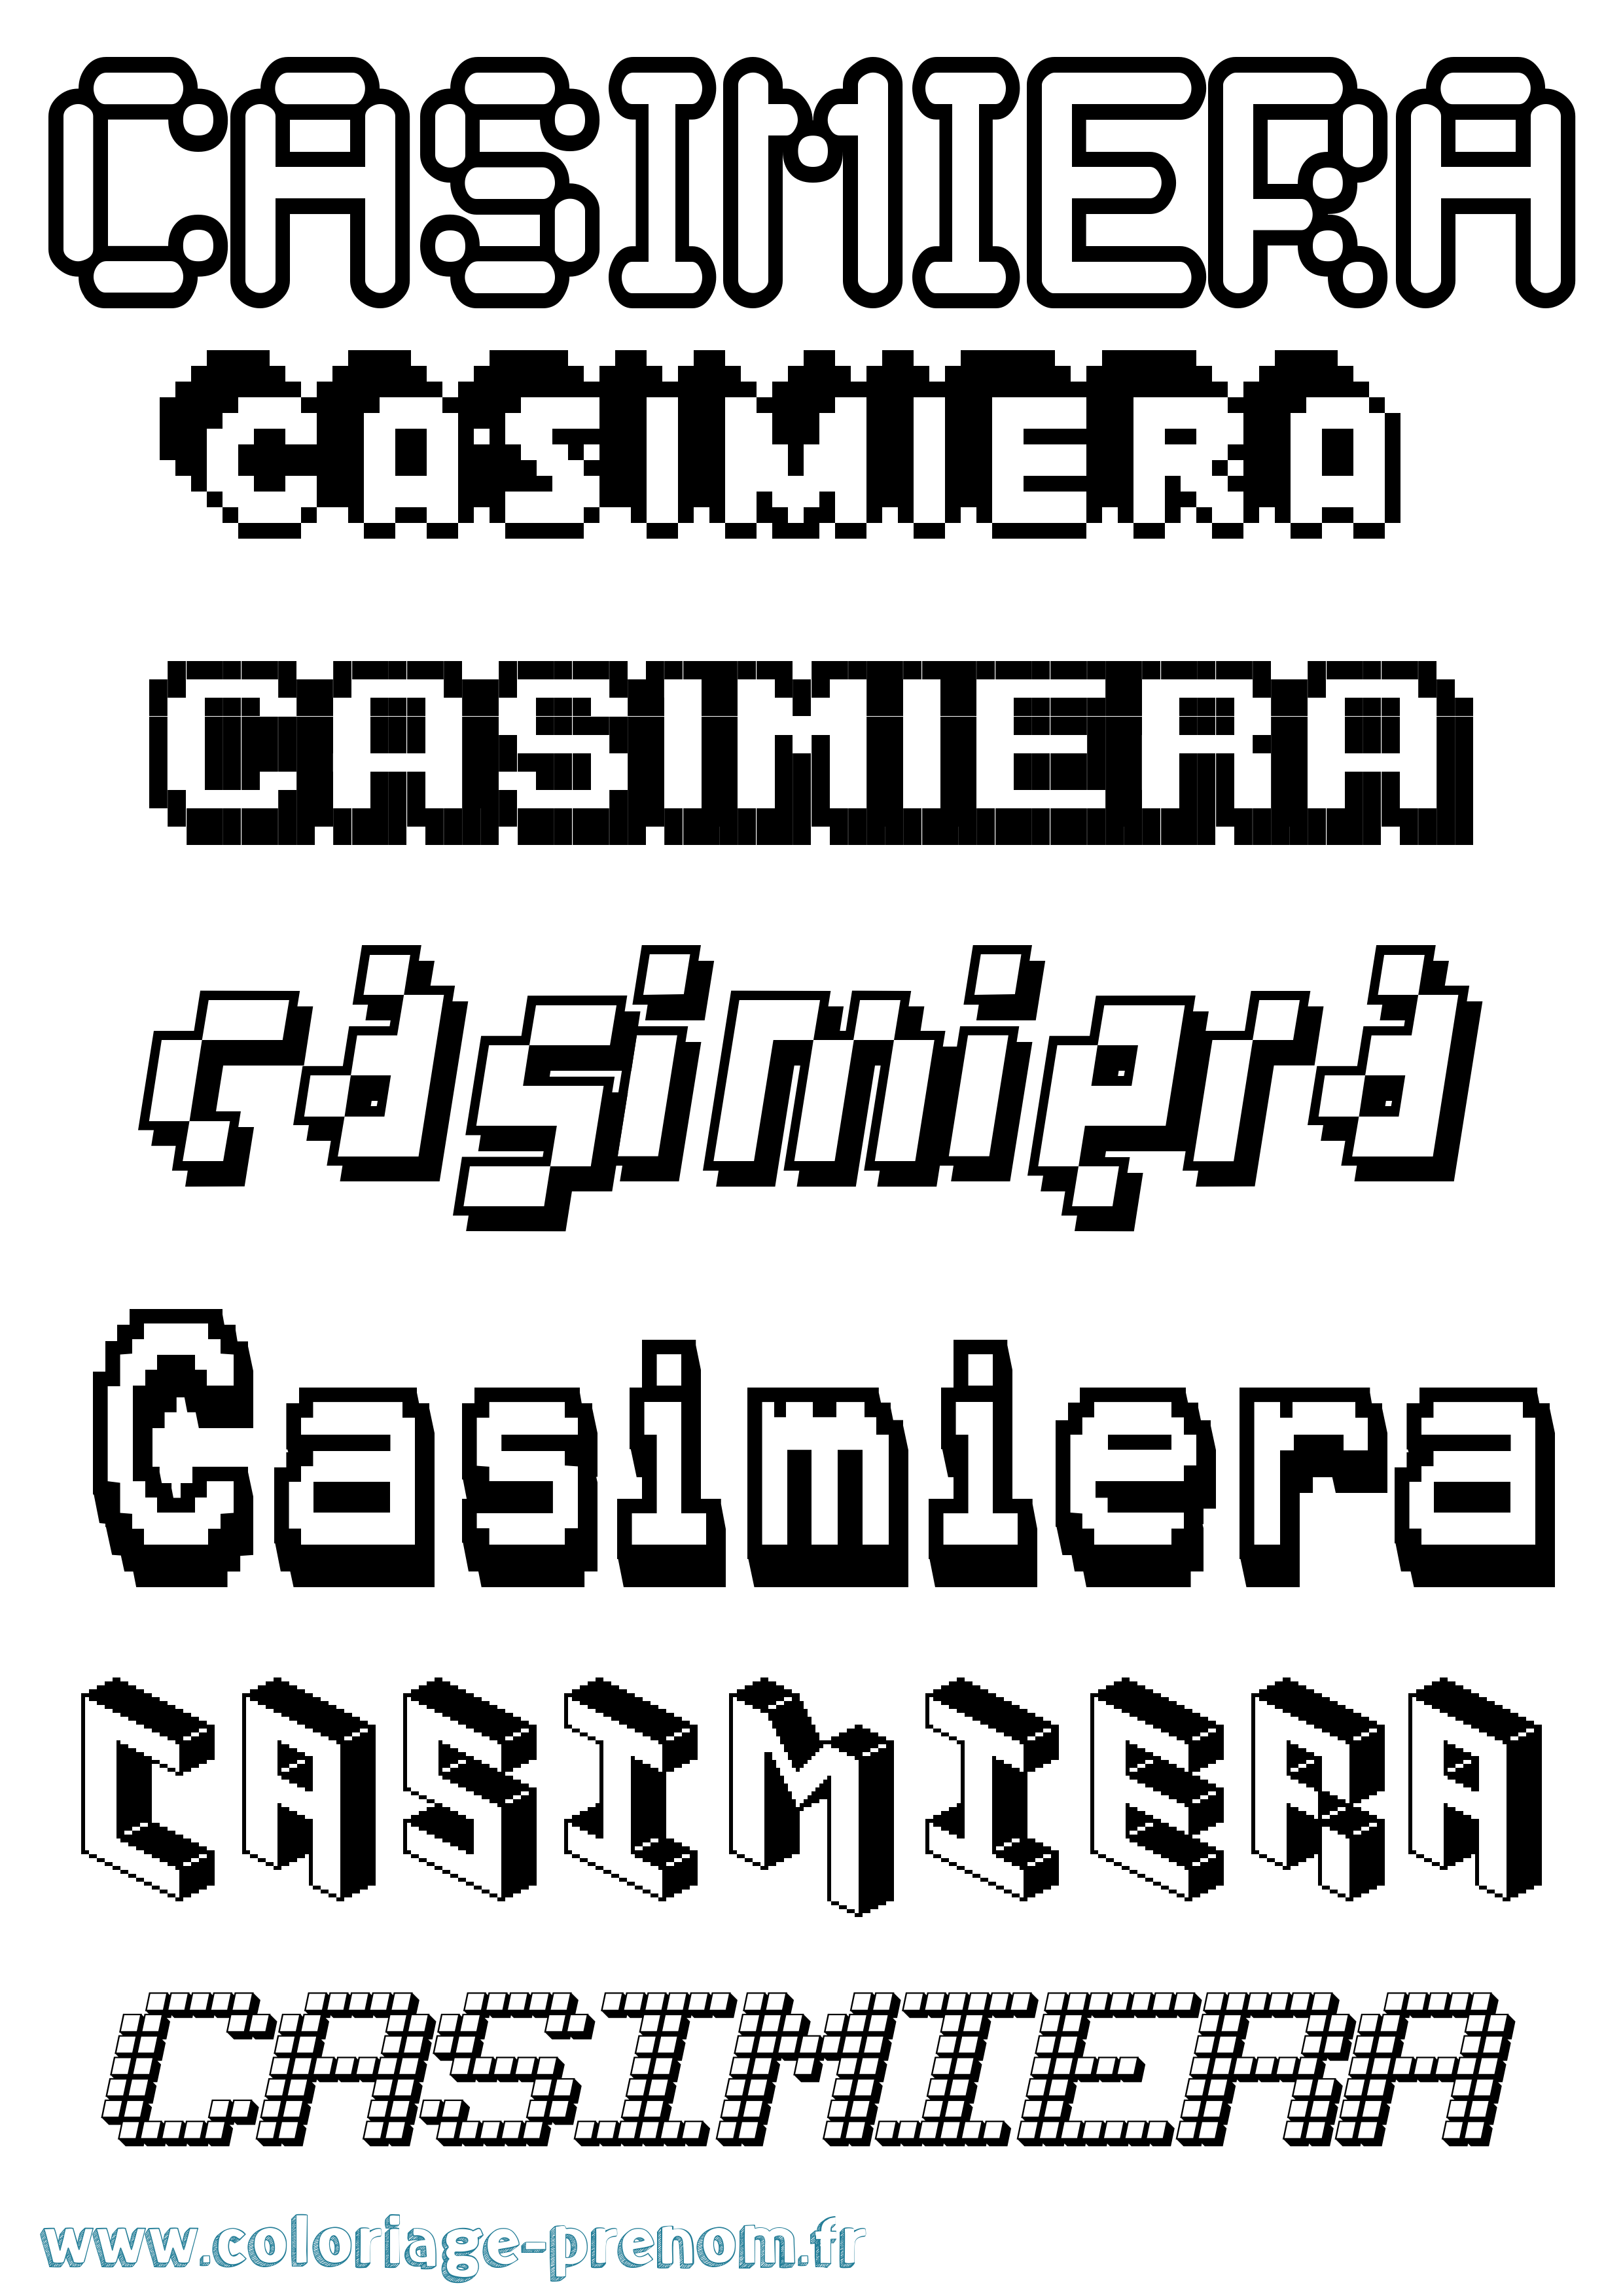 Coloriage prénom Casimiera Pixel